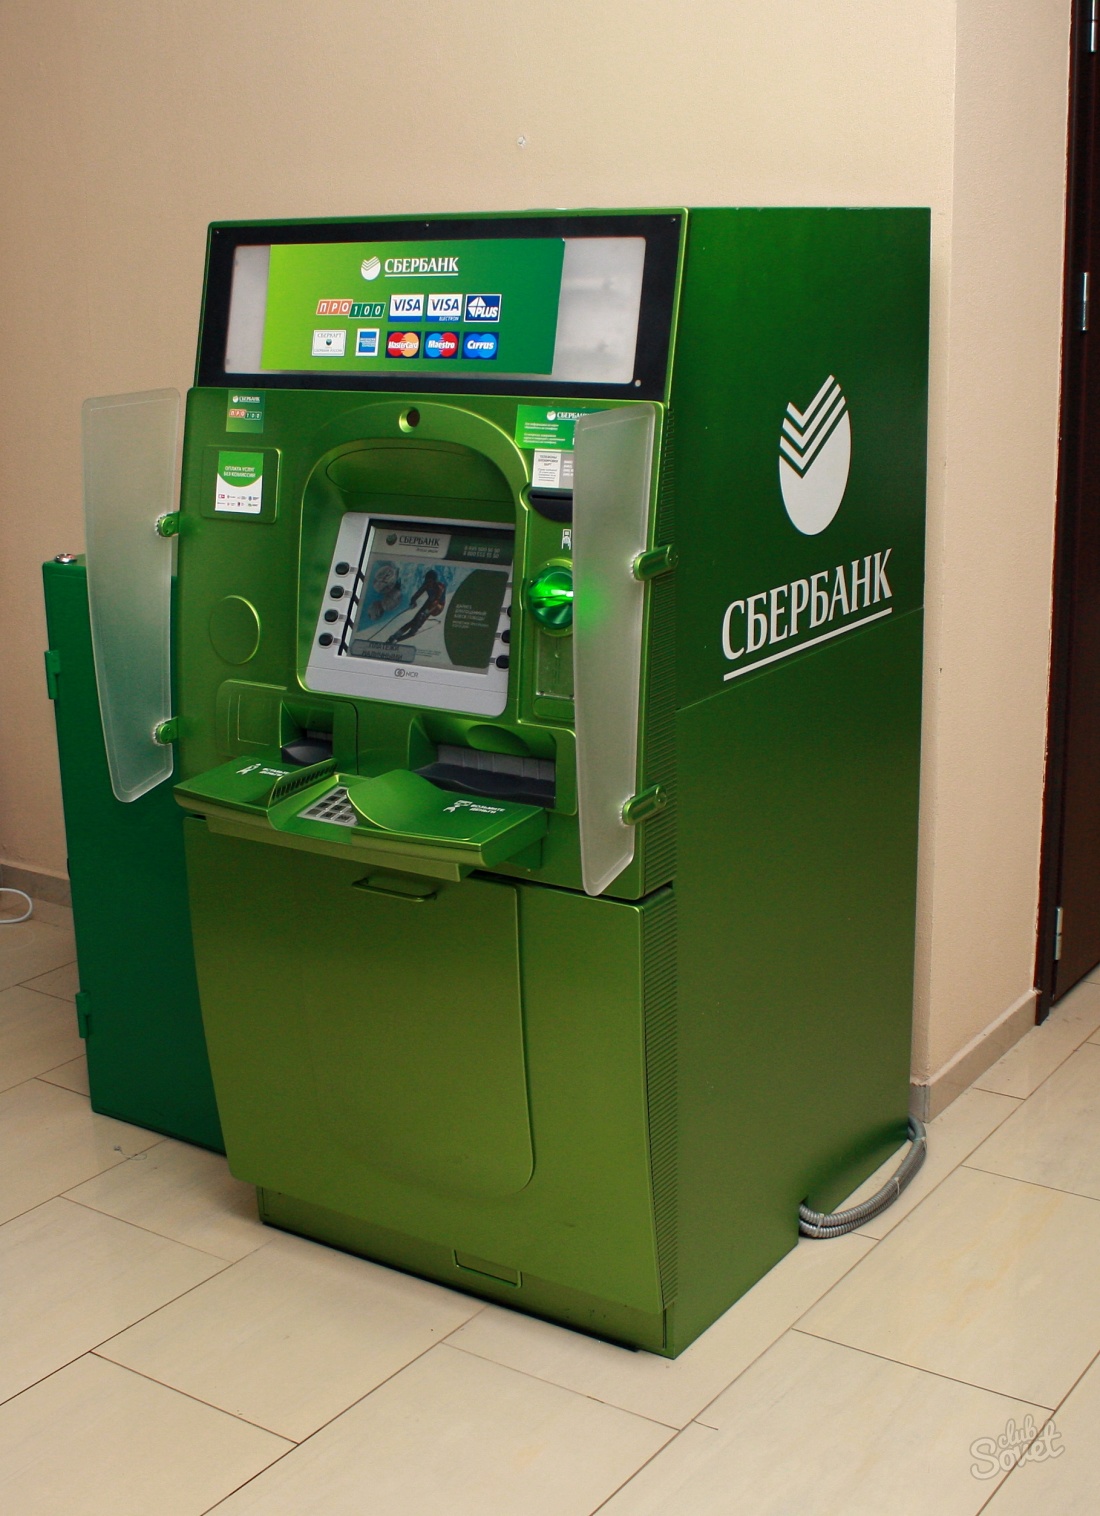 Jak zapłacić za pośrednictwem terminalu Sberbank